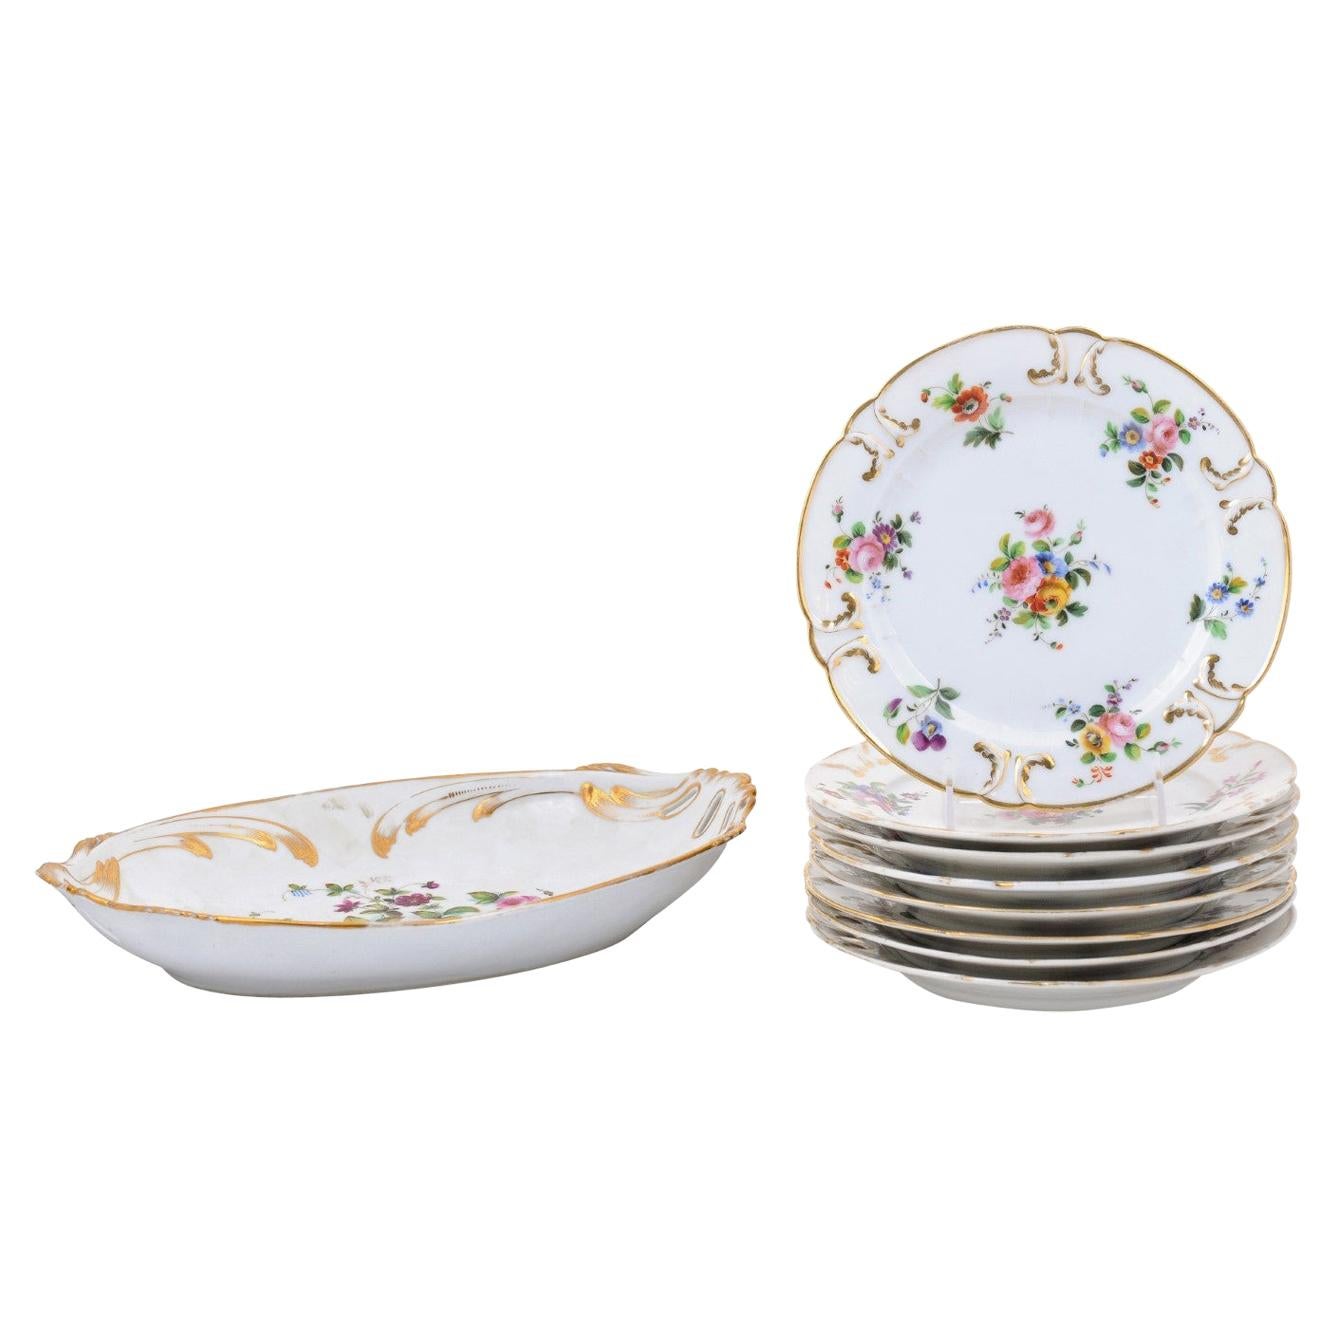 French Napoléon III Porcelain de Paris Plates with Floral Décor, Sold Separately